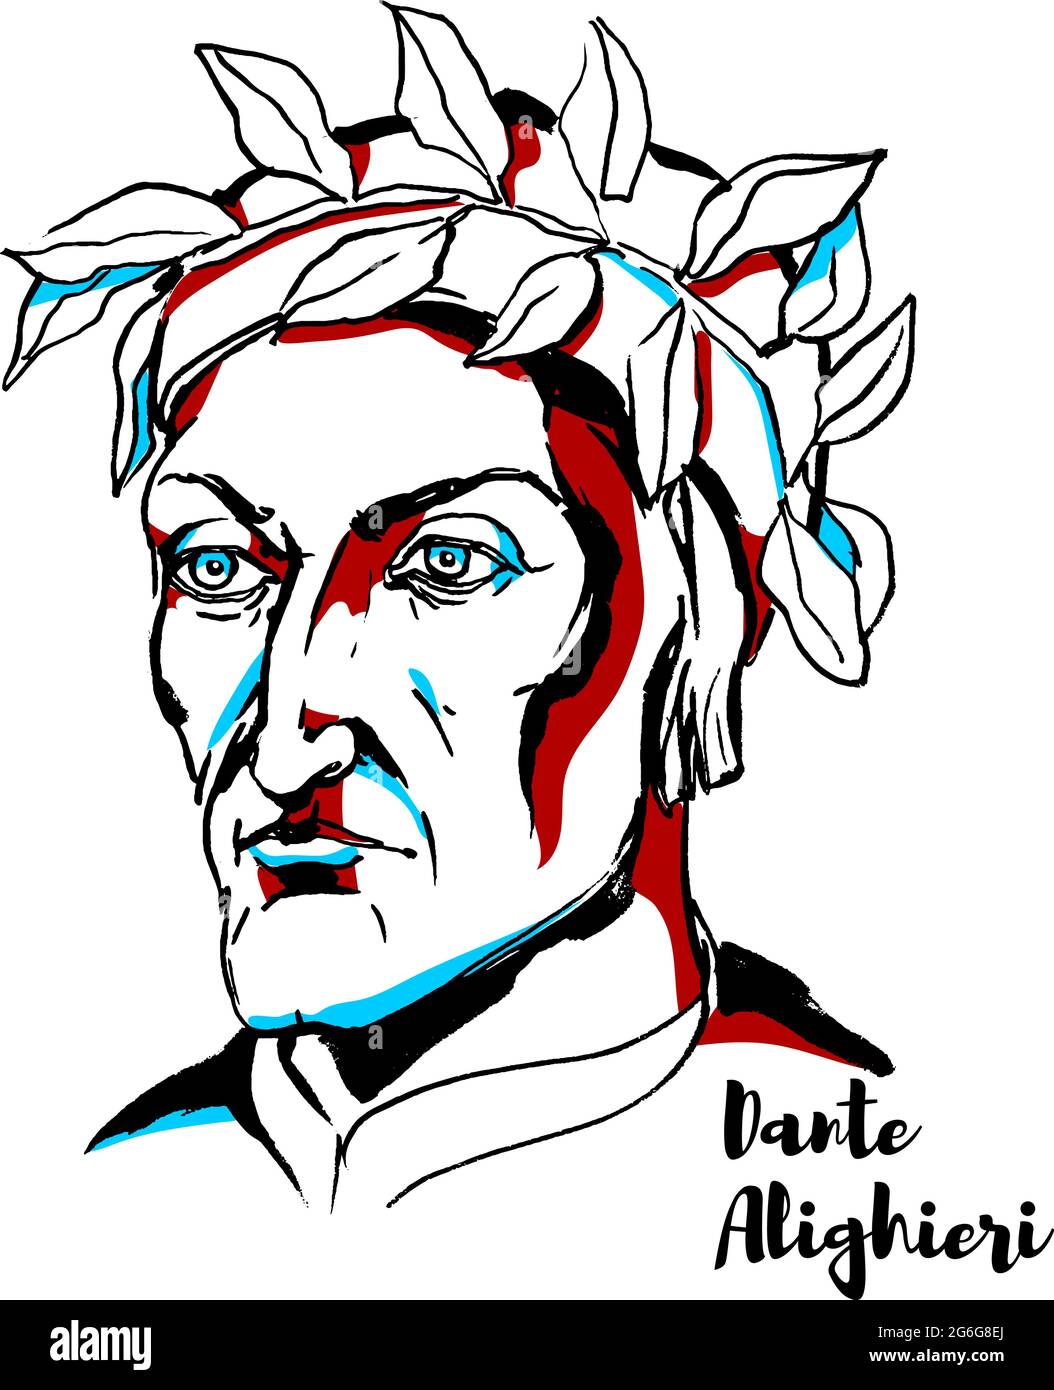 Dante Alighieri retrato vectorial grabado con contornos de tinta. Gran poeta italiano de finales de la Edad Media. Ilustración del Vector